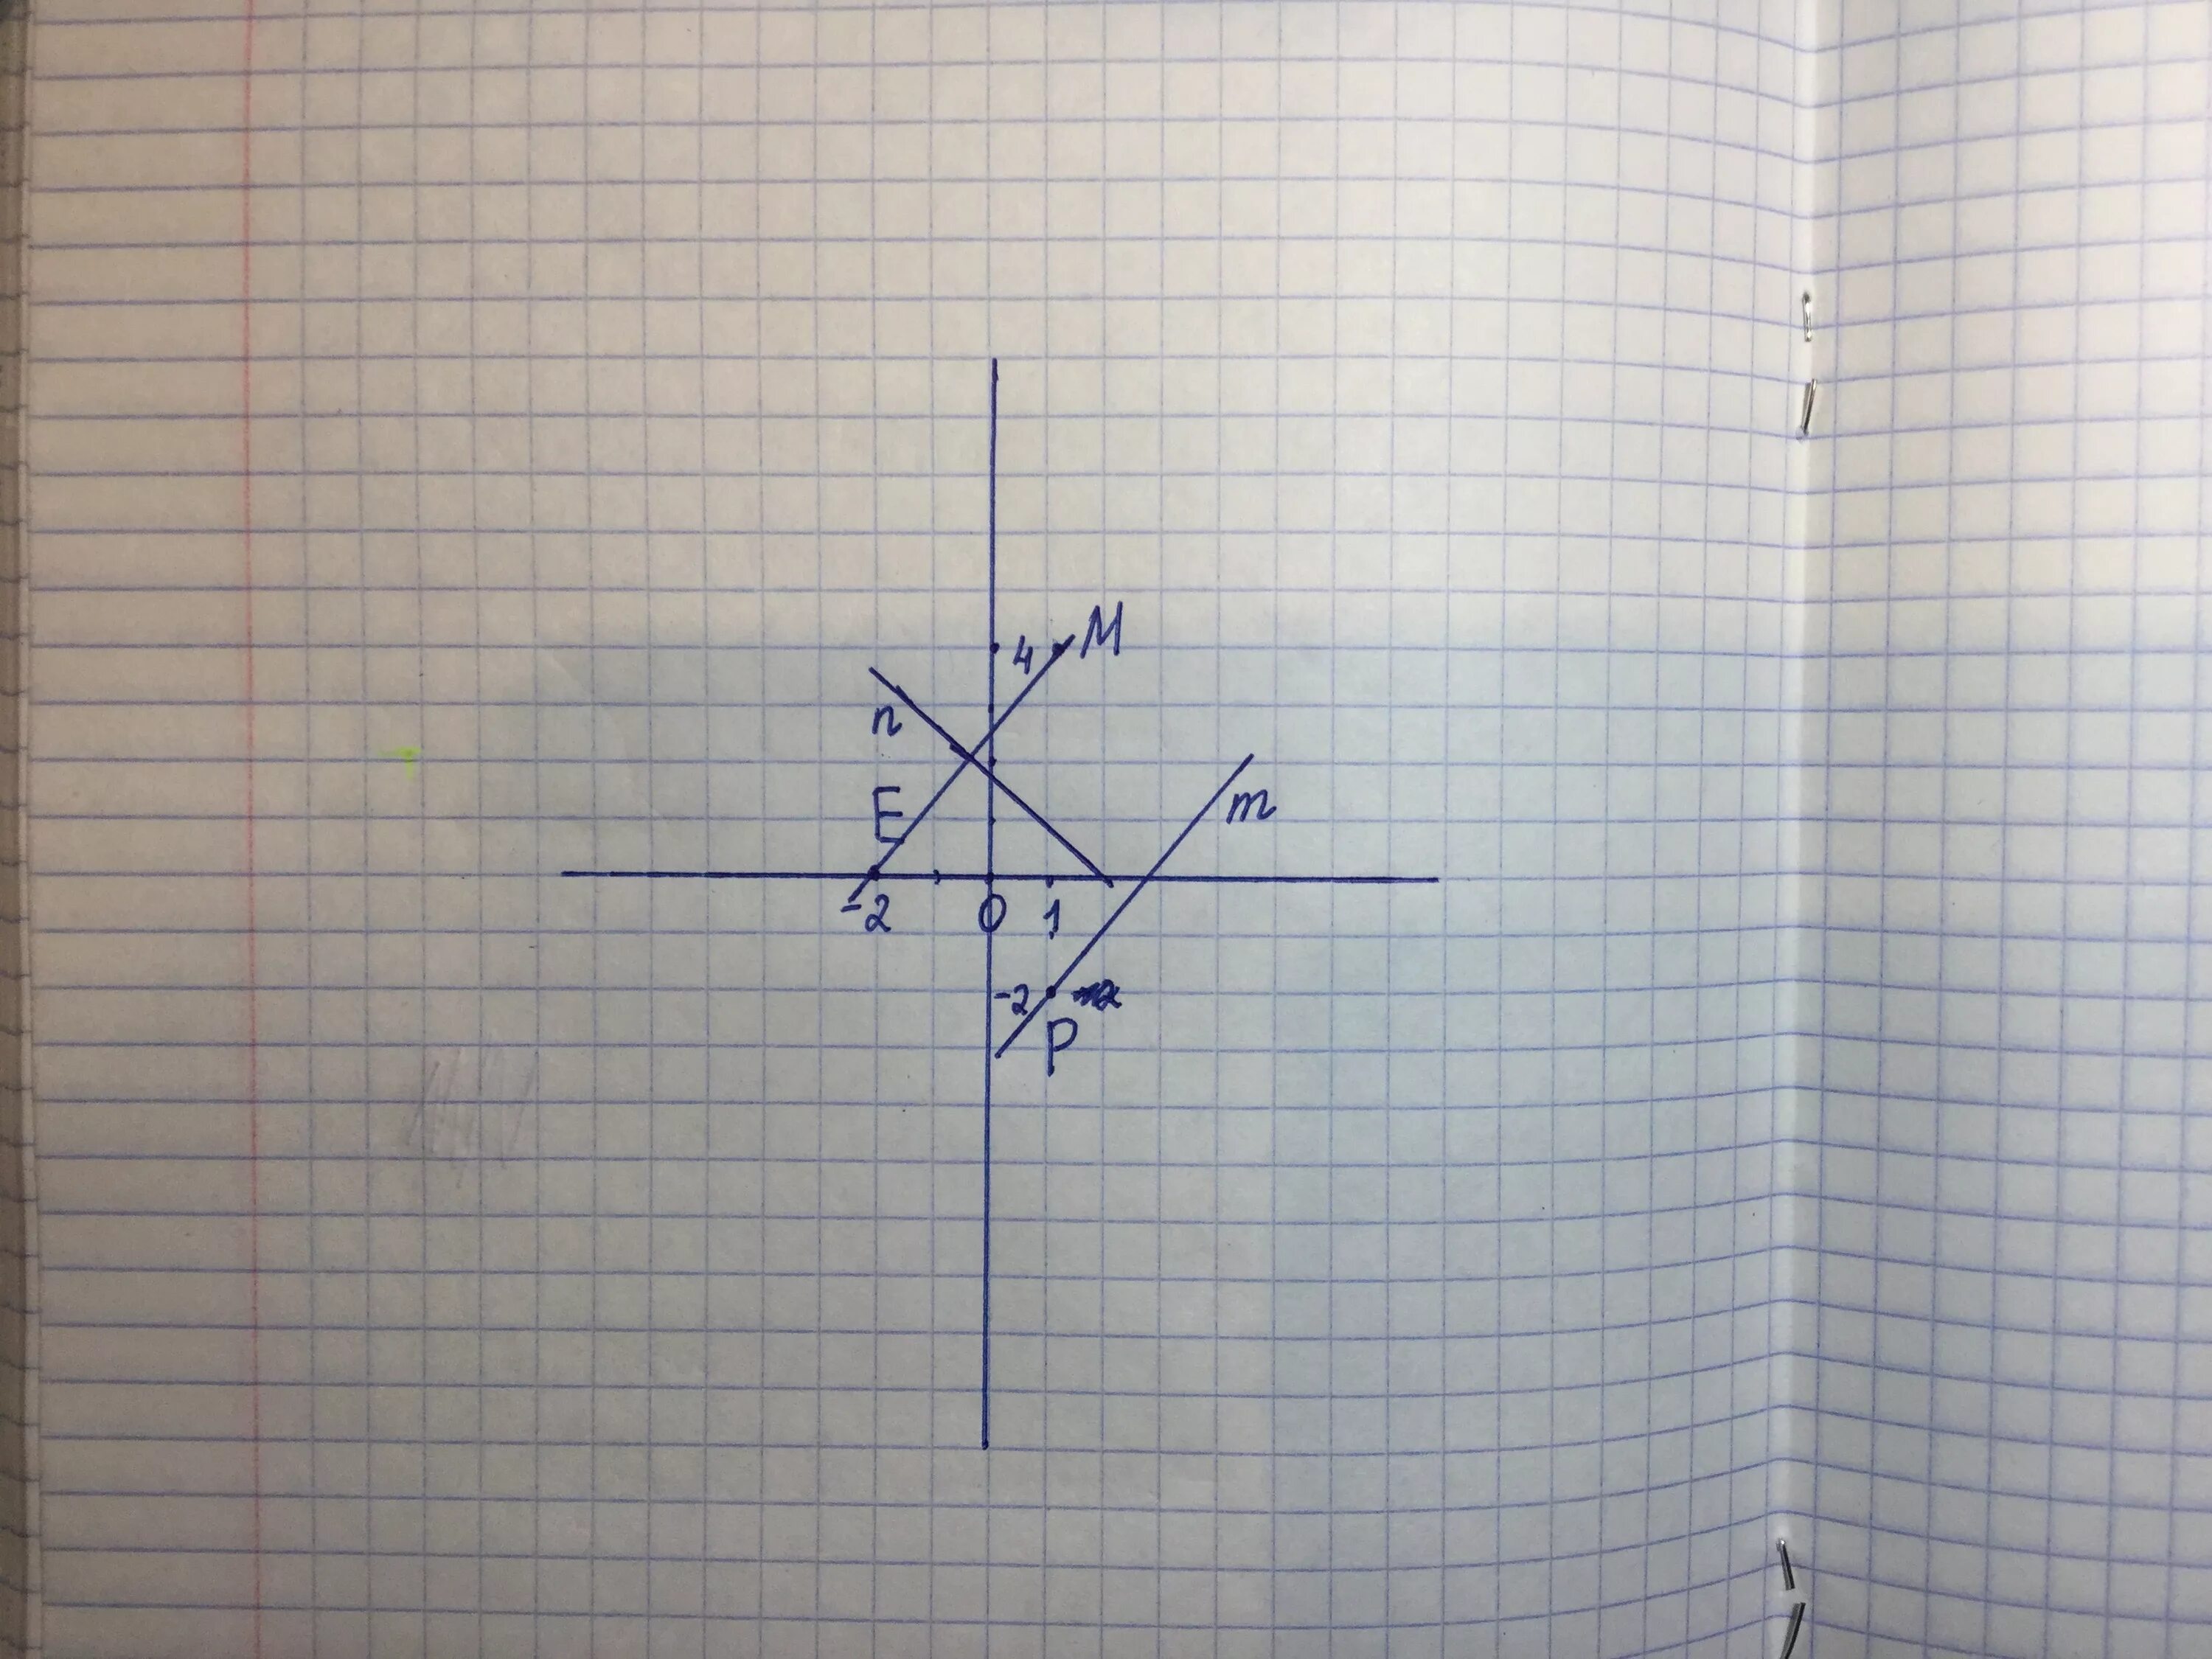 Е 2 3 4 7 0. Отметьте на координатной плоскости точки. Отметь точки на координатной плоскости. Отметьте на координатной плоскости точки м. Отметьте на координатной прямой точки е -2 0 f1 4.